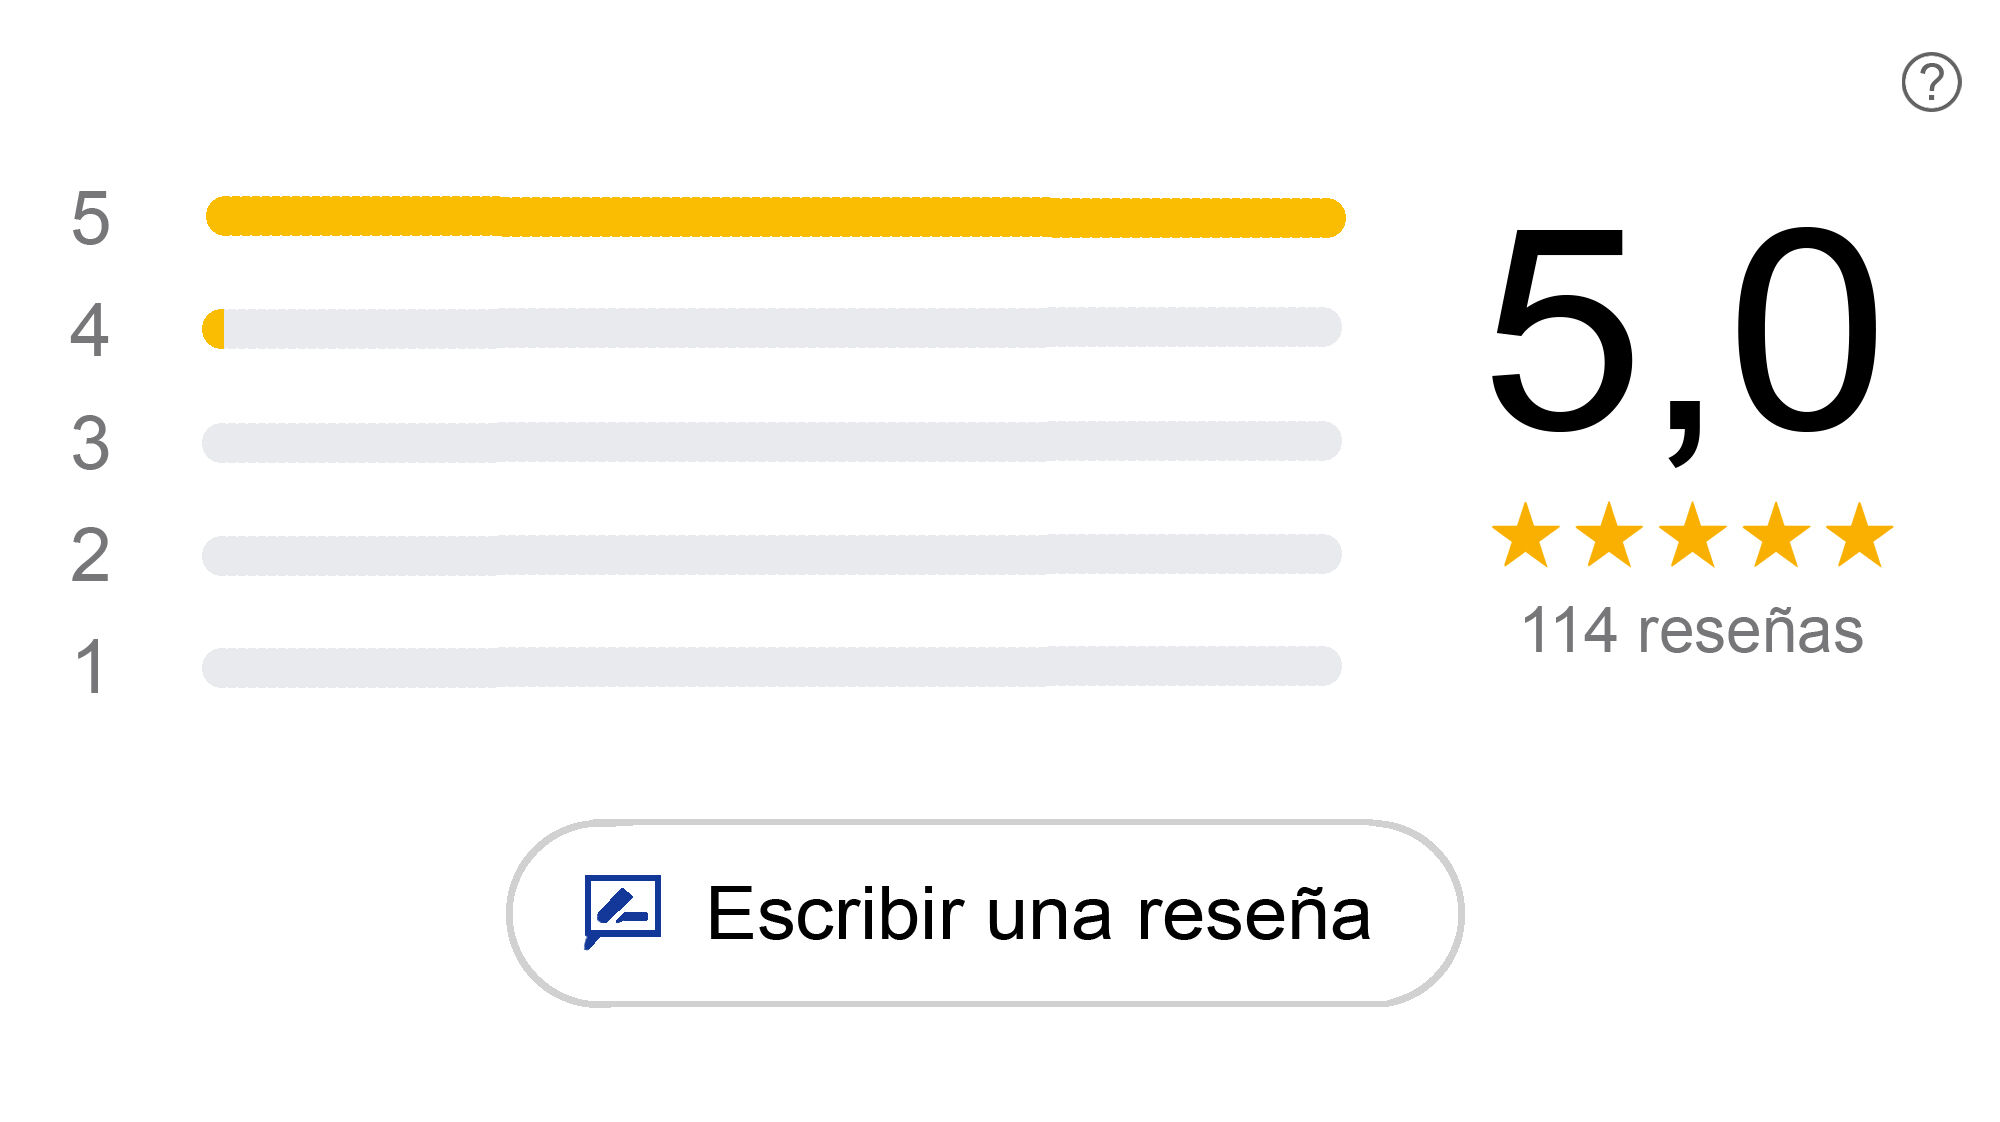 Captura de pantalla de la media de valoraciones en la ficha de Google My Business de José María Márquez Fotógrafo. 60 reseñas con valoración media de 5 estrellas.